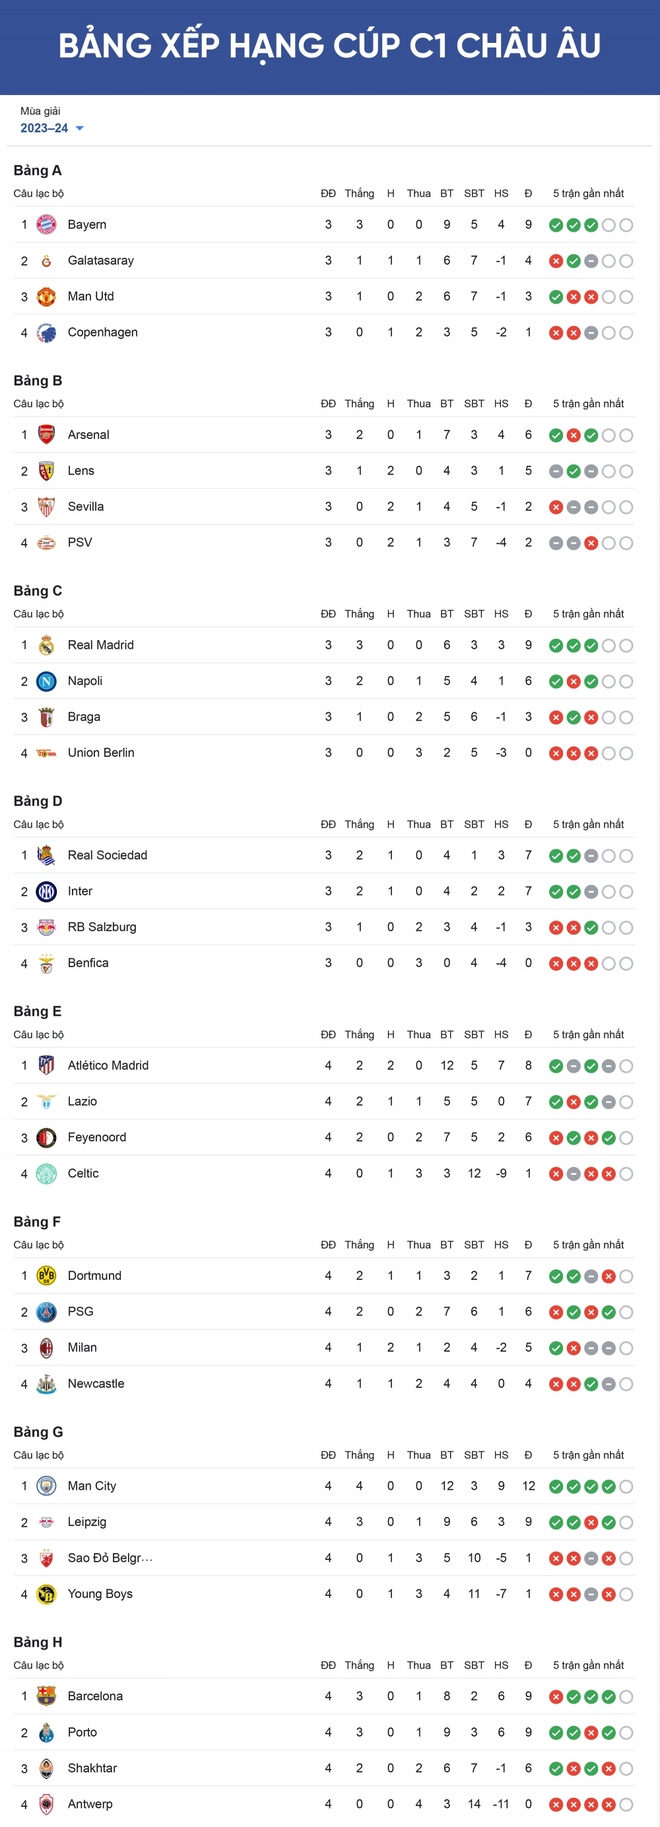 Bảng xếp hạng Cúp C1 châu Âu mới nhất: Xác định 2 đội đi tiếp - Ảnh 1.